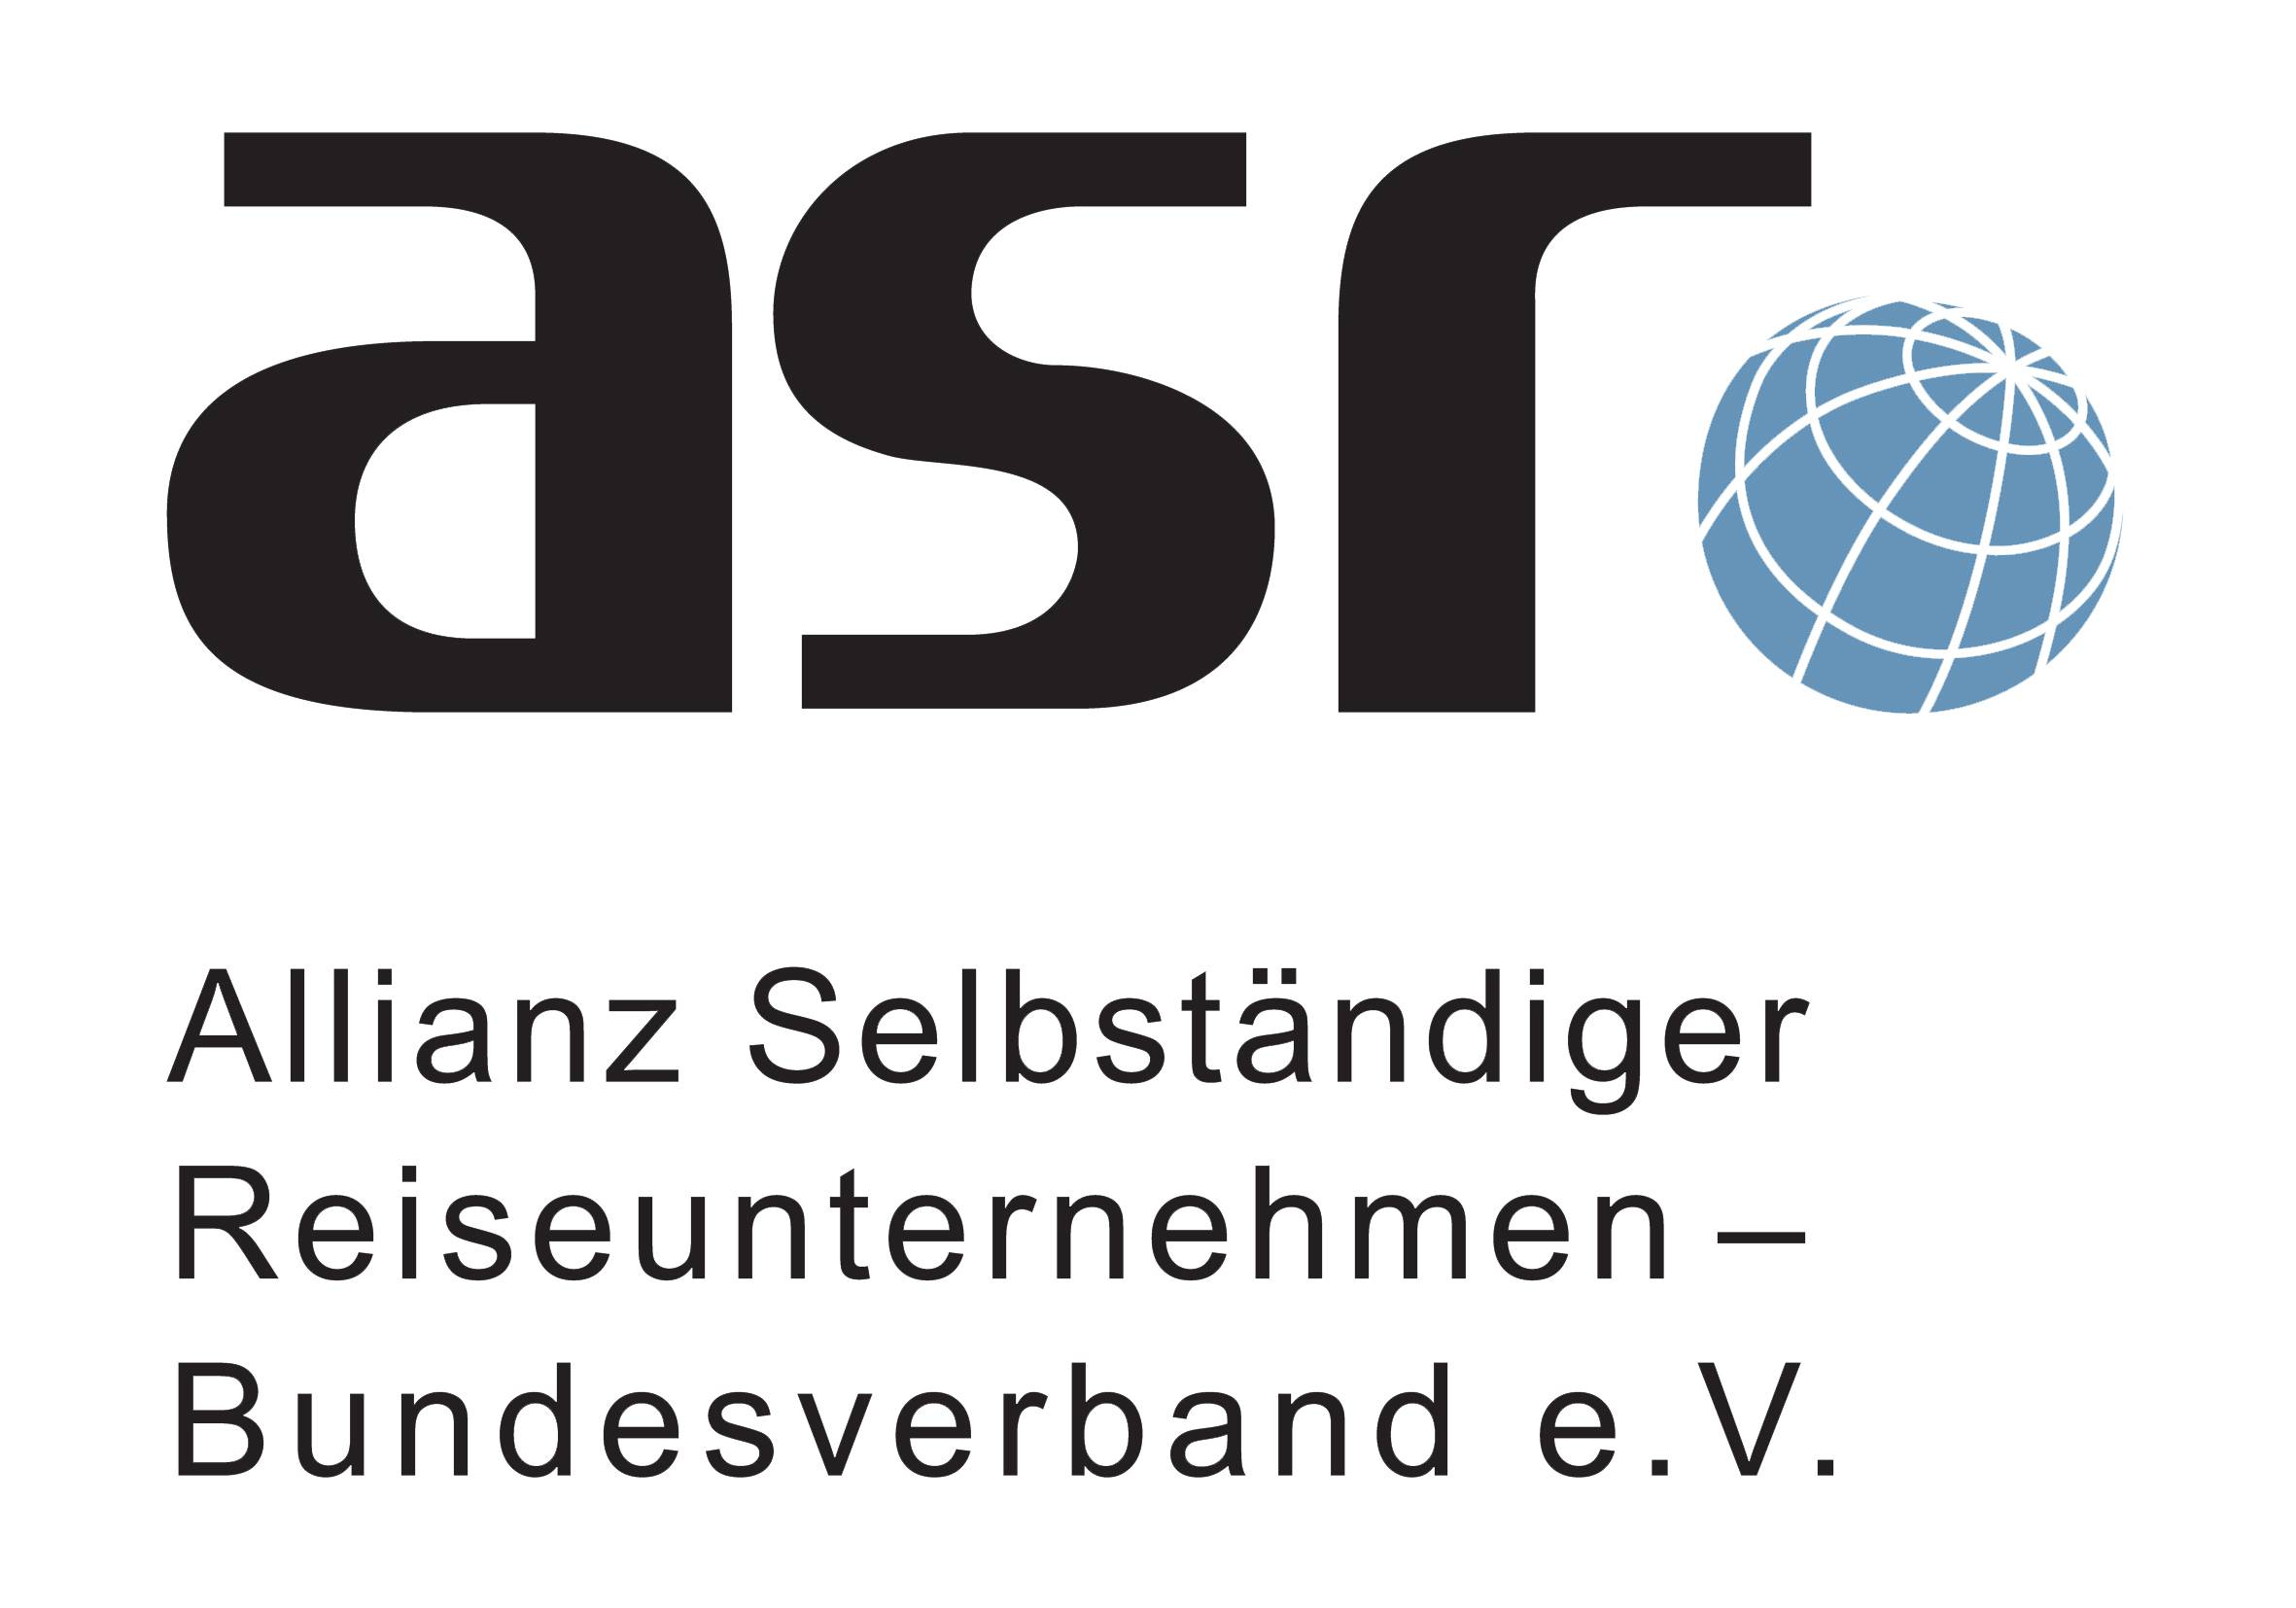 Allianz Selbständiger Reiseunternehmen (ASR)